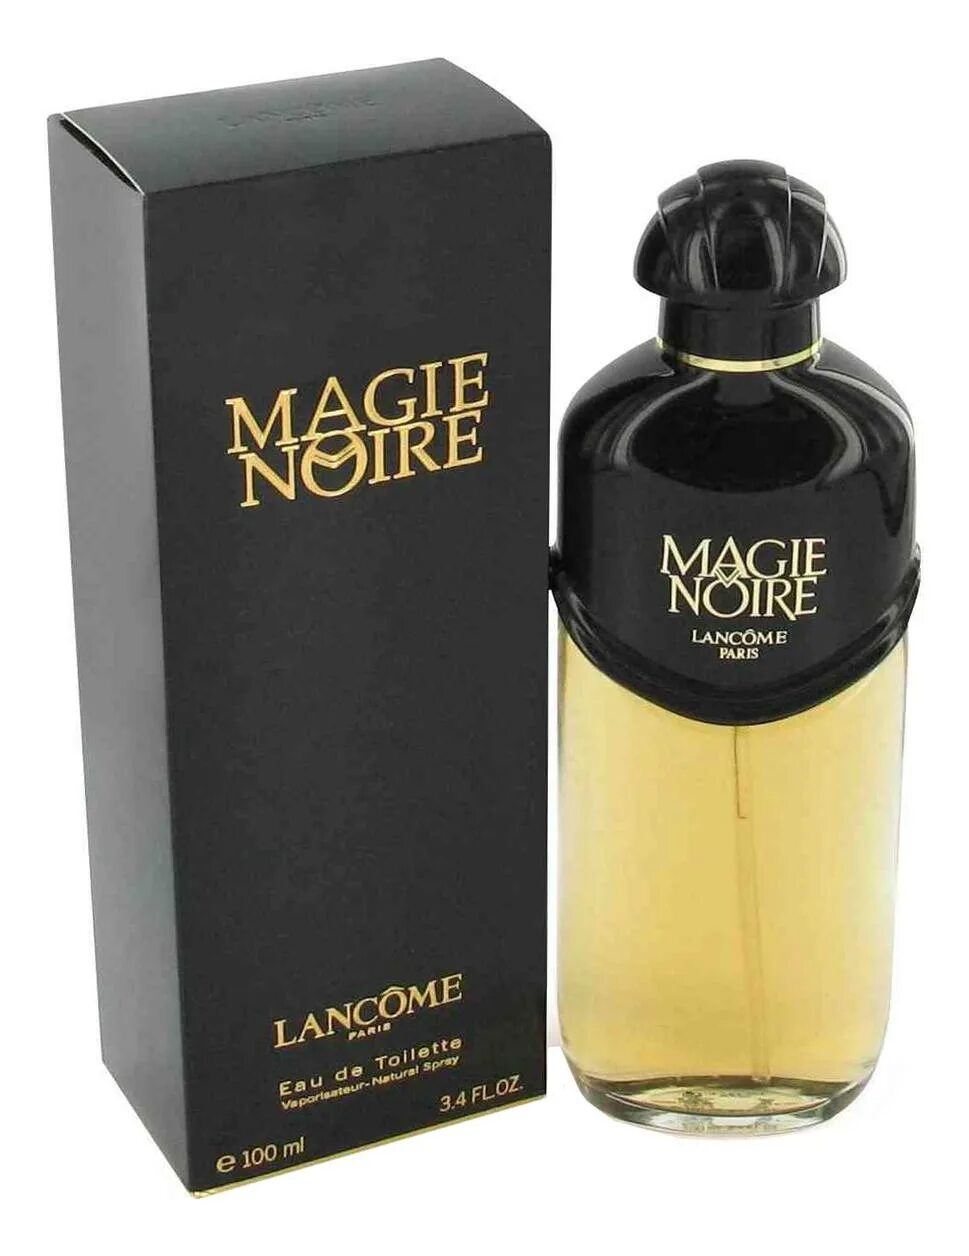 Lancome magie noire 50 мл. Парфюм Lancome magie noire. Lancome magie noire духи. Духи мужские magie noire, 100.